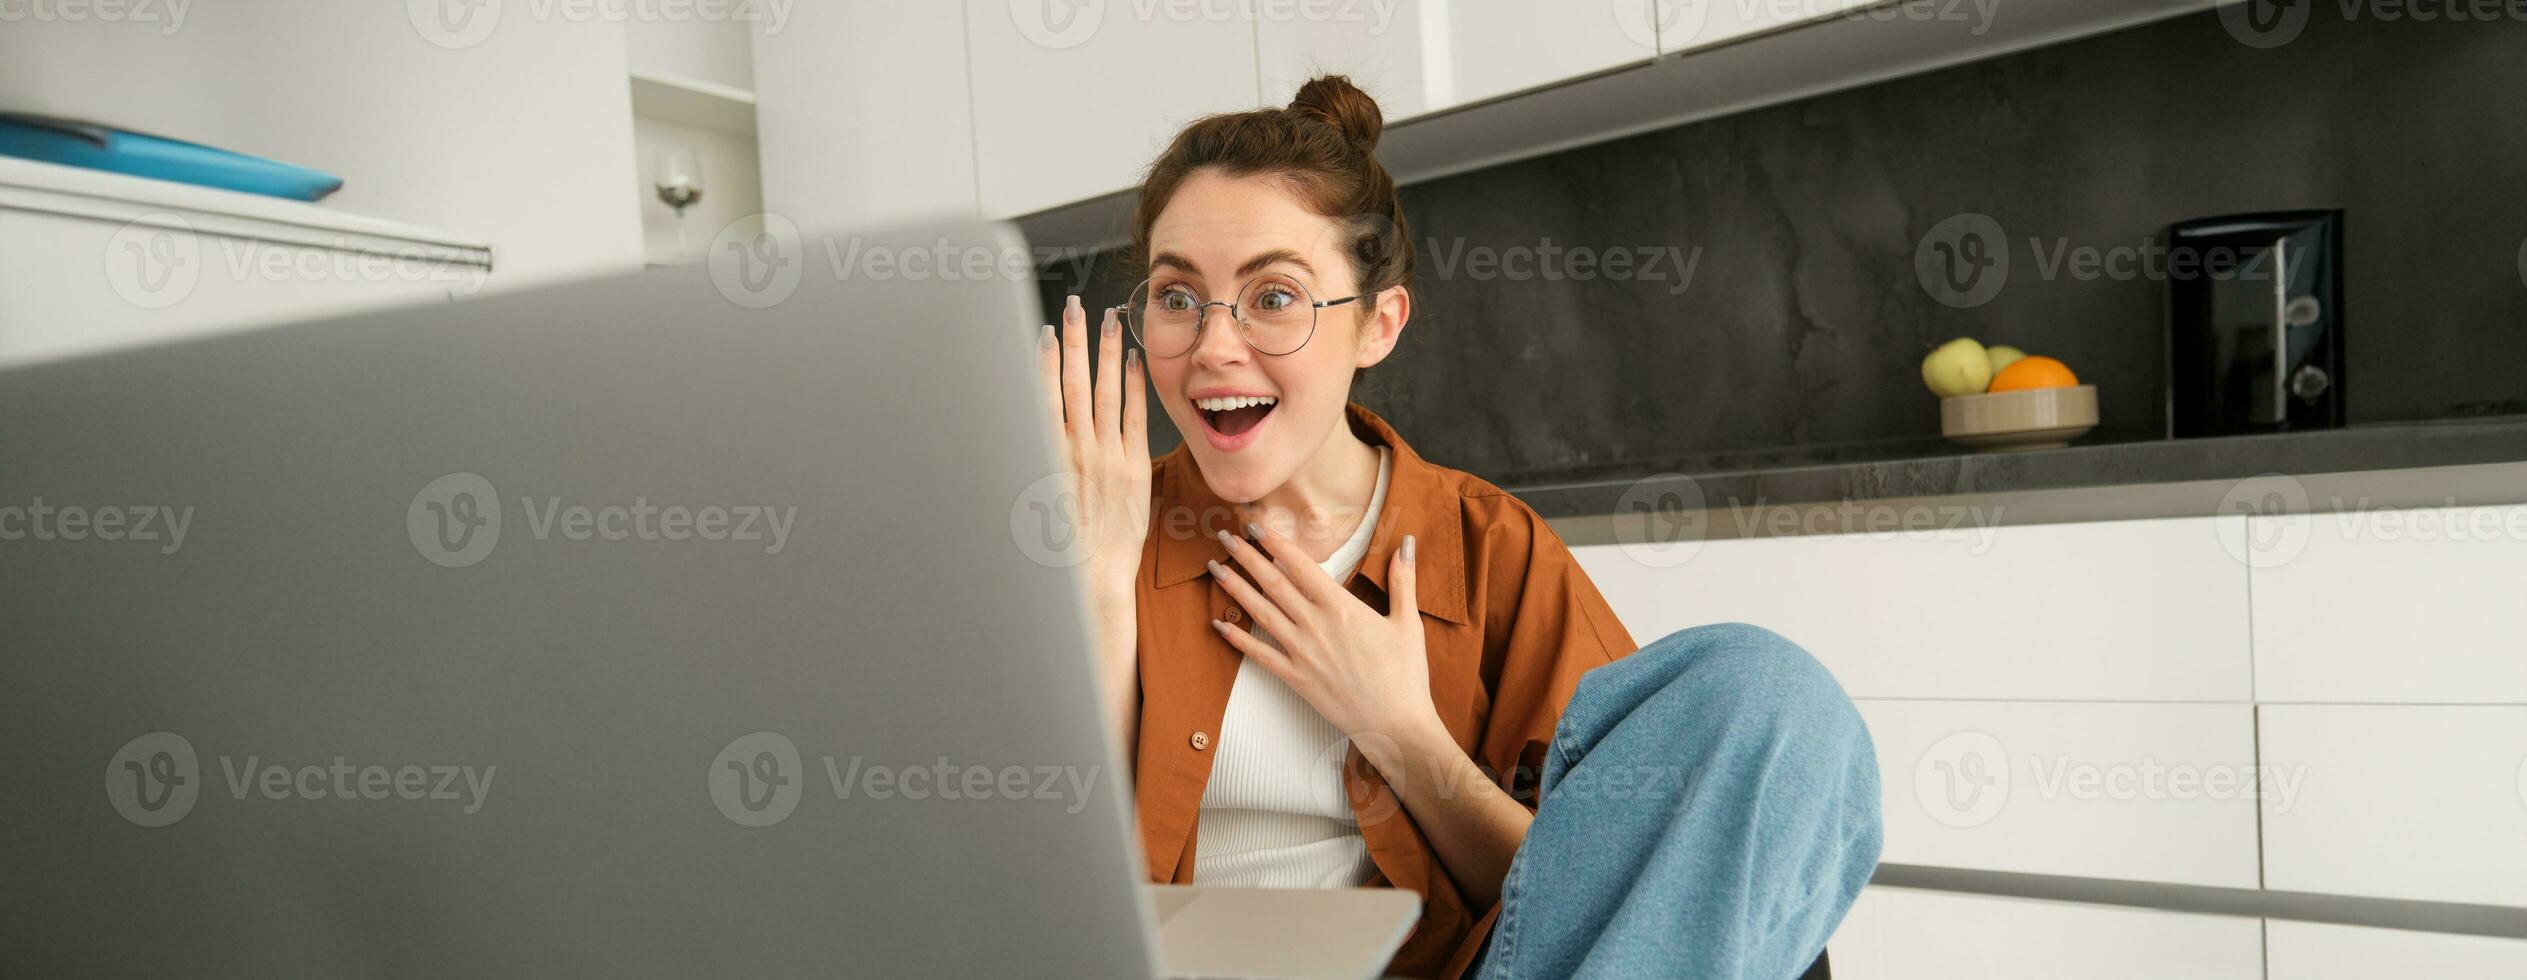 ritratto di bellissimo giovane donna in linea chat con amico su computer portatile, si connette per video conversazione, parlando attraverso computer, guardare sorpreso e contento foto